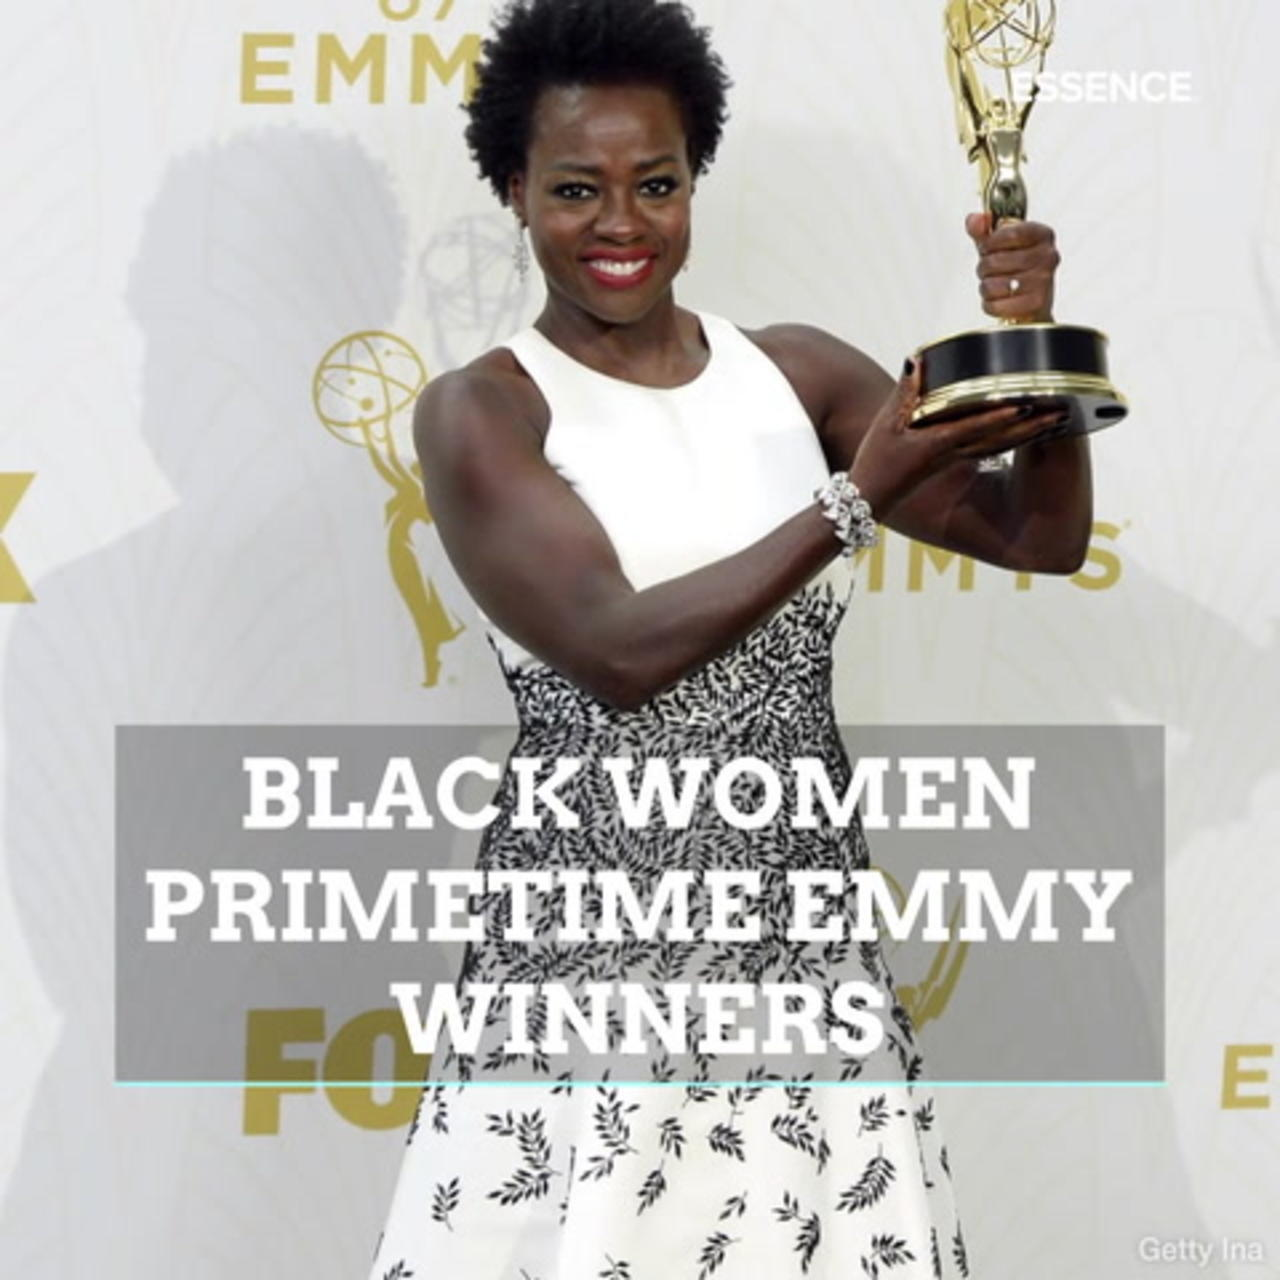 Black Women Primetime Emmy Winners